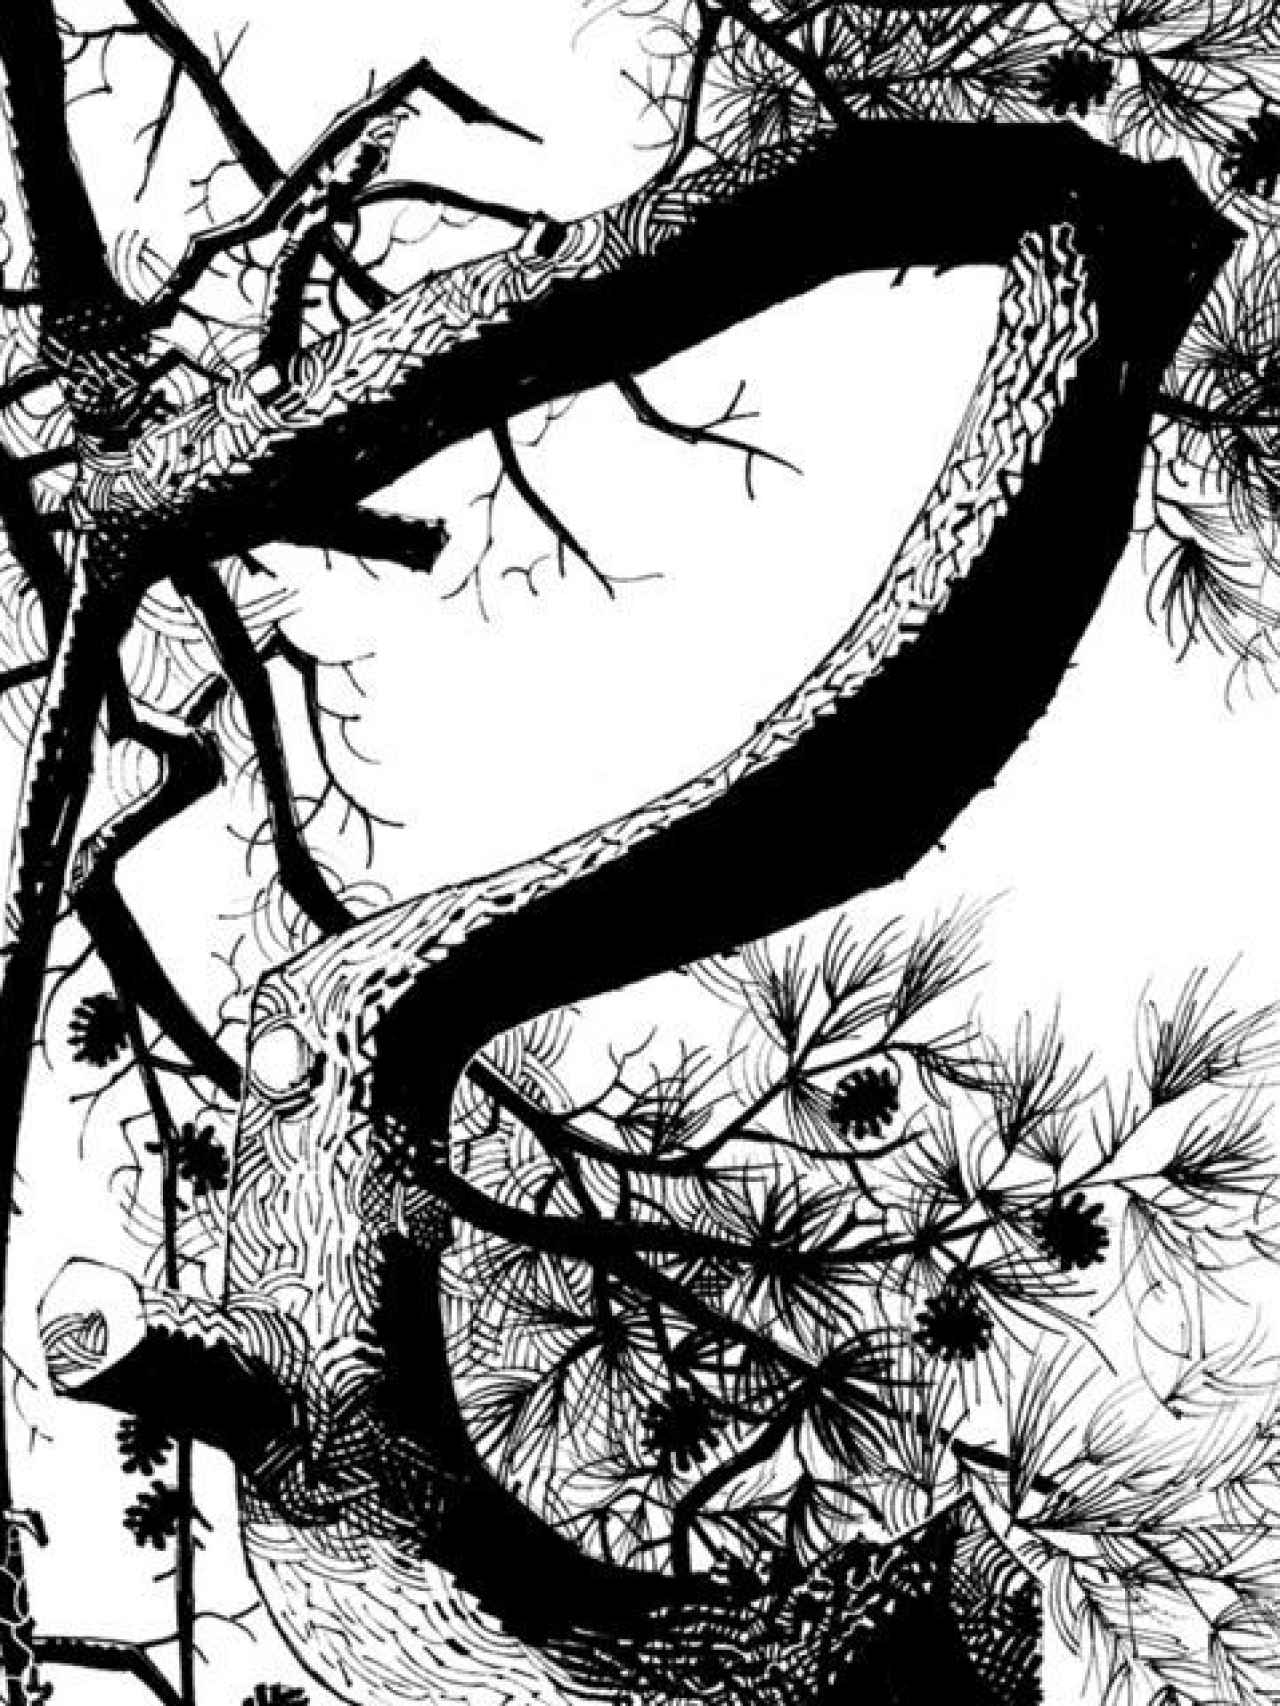 Una de las imágenes incluidas en la serie pictórica de pinos.